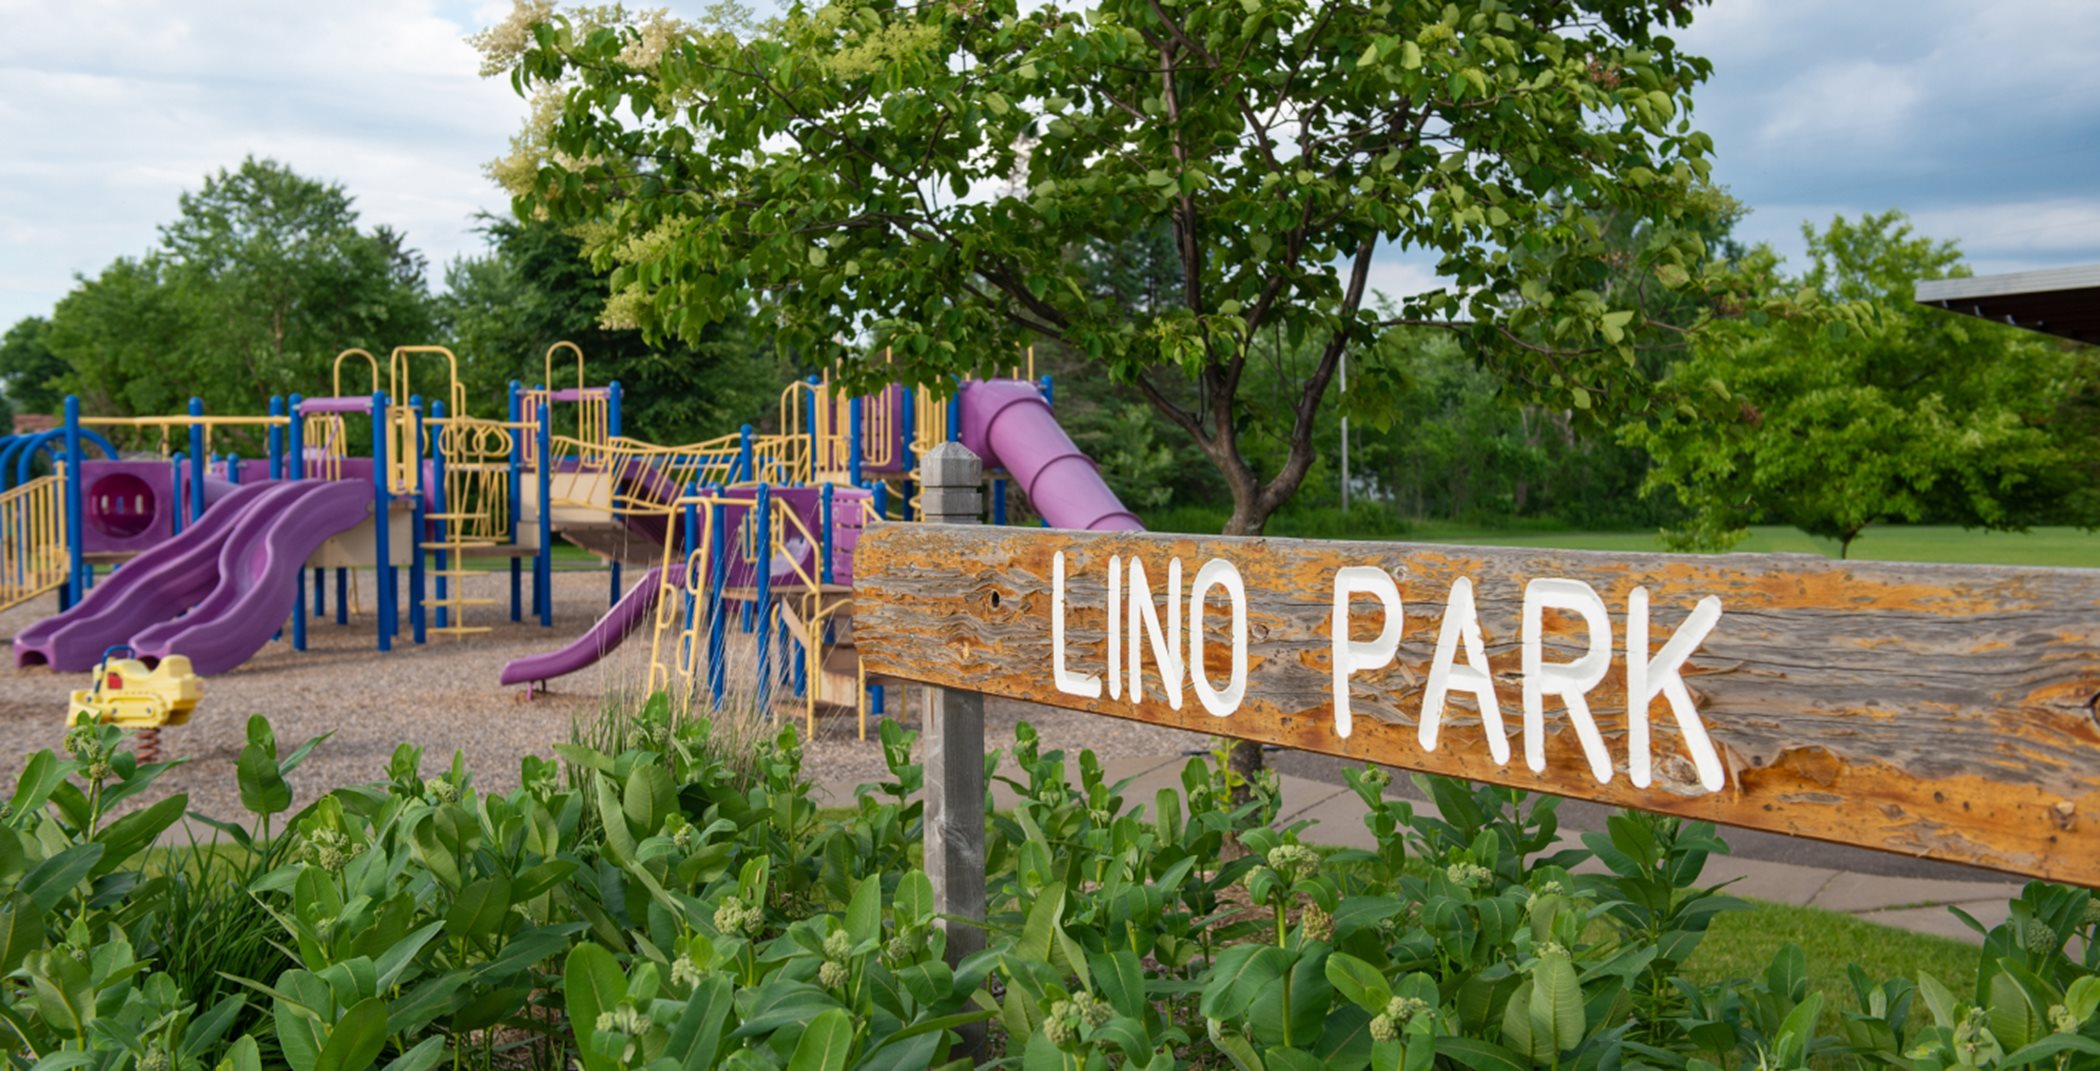 Lino Park